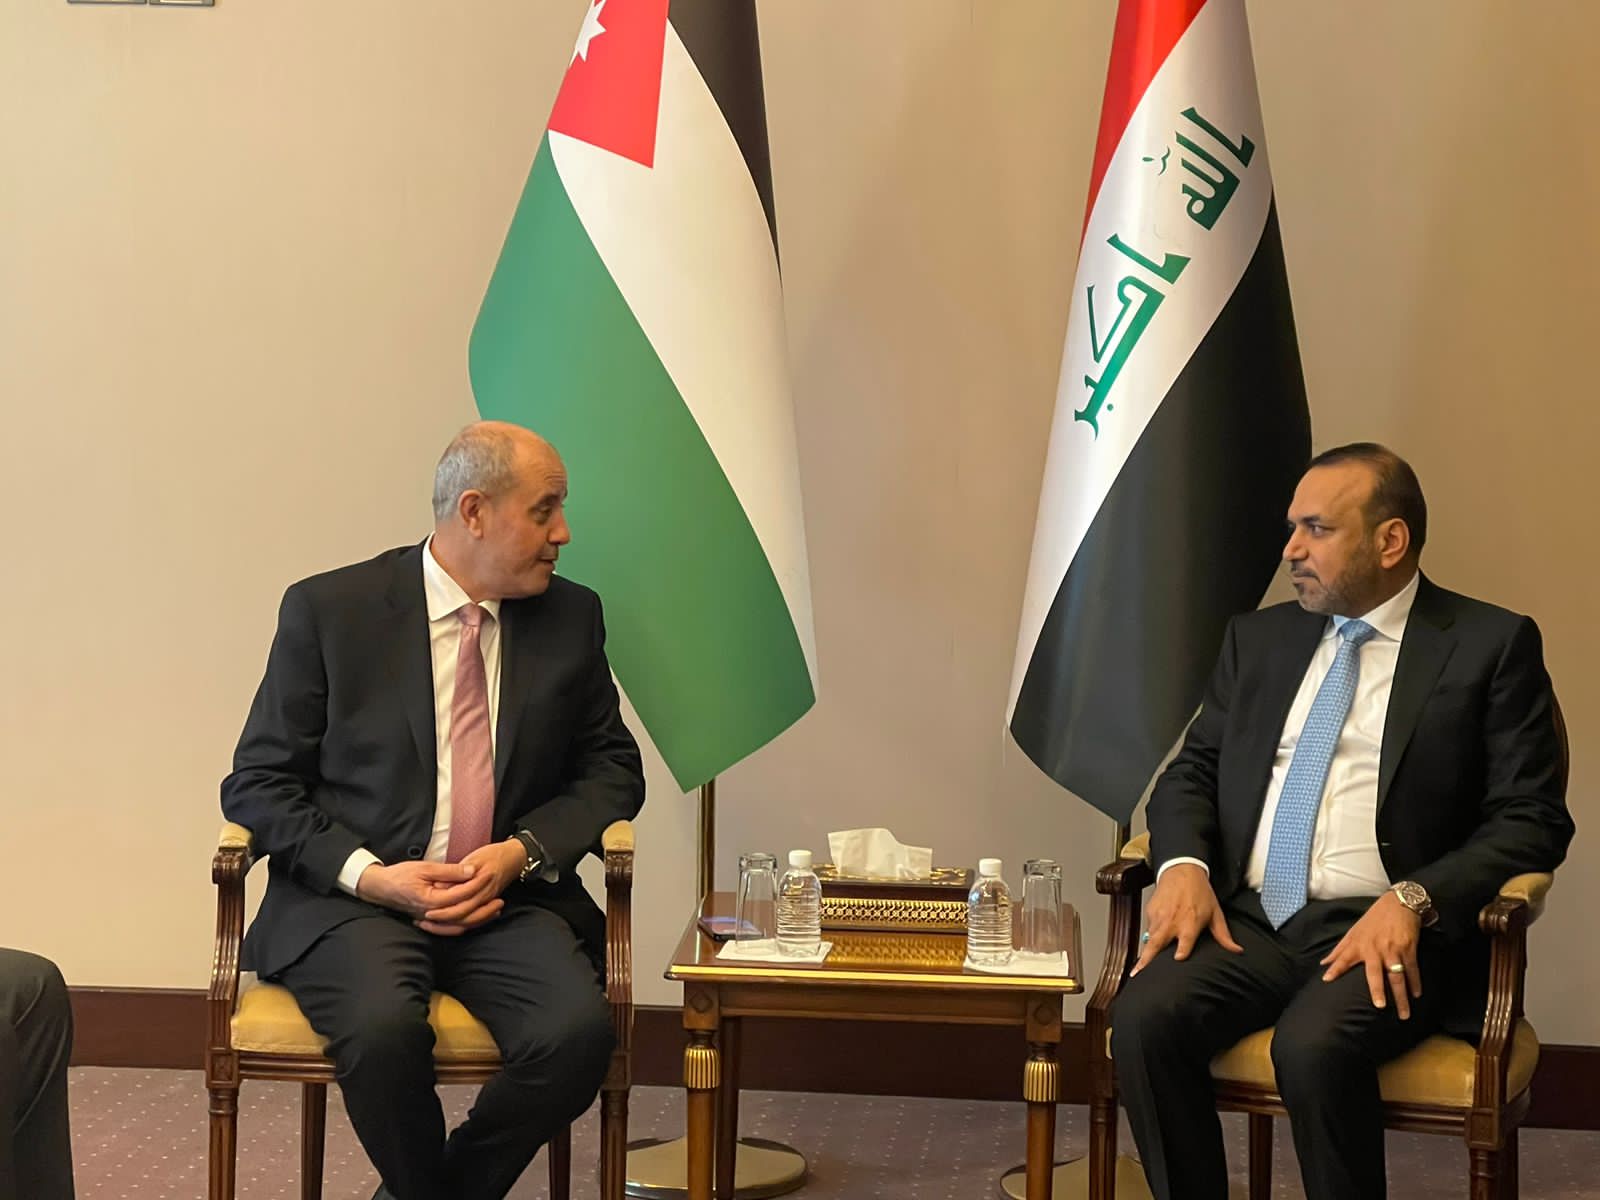 وزير الصناعة والتجارة يبحث مع مسؤولين عراقيين آليات تعزيز التعاون بين البلدين 